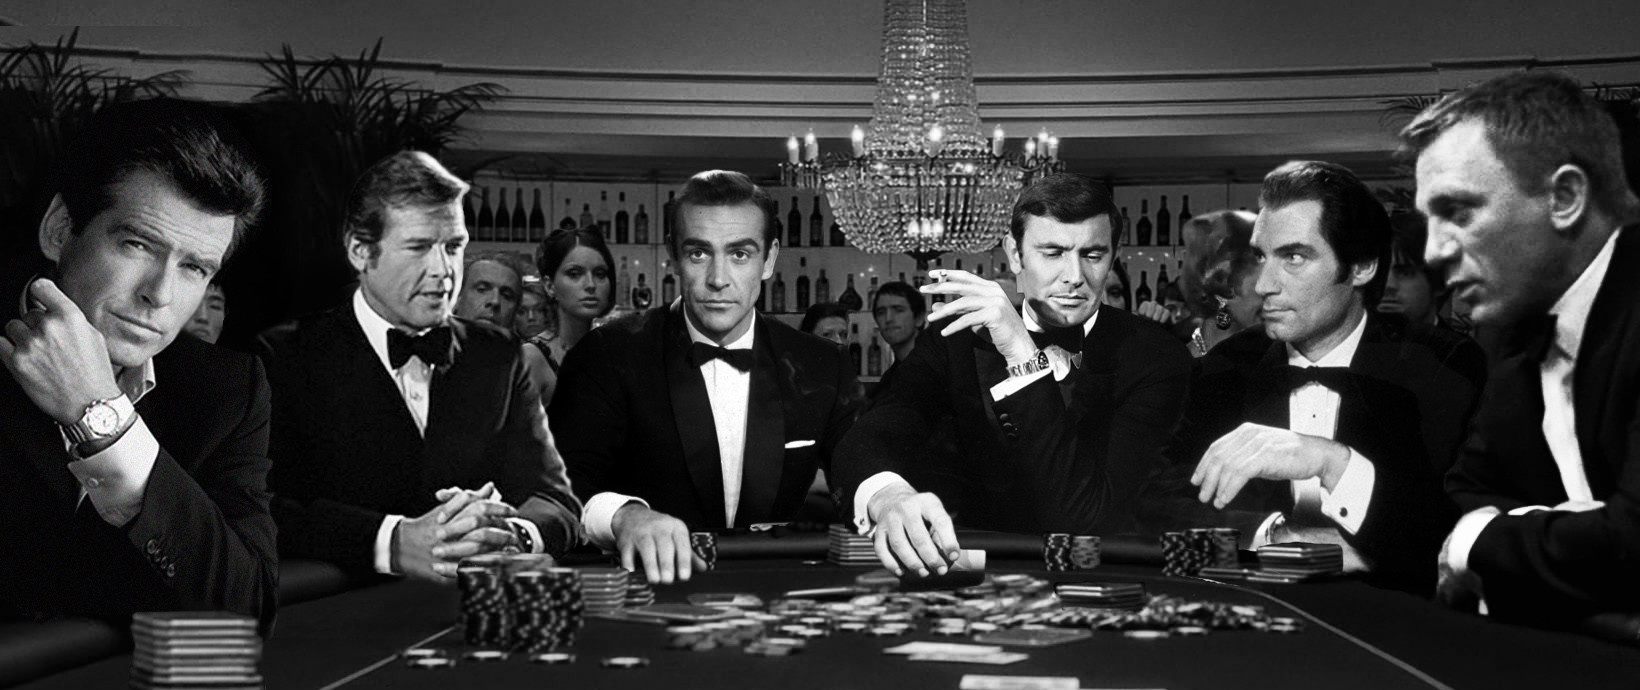 James Bond Gambling Game